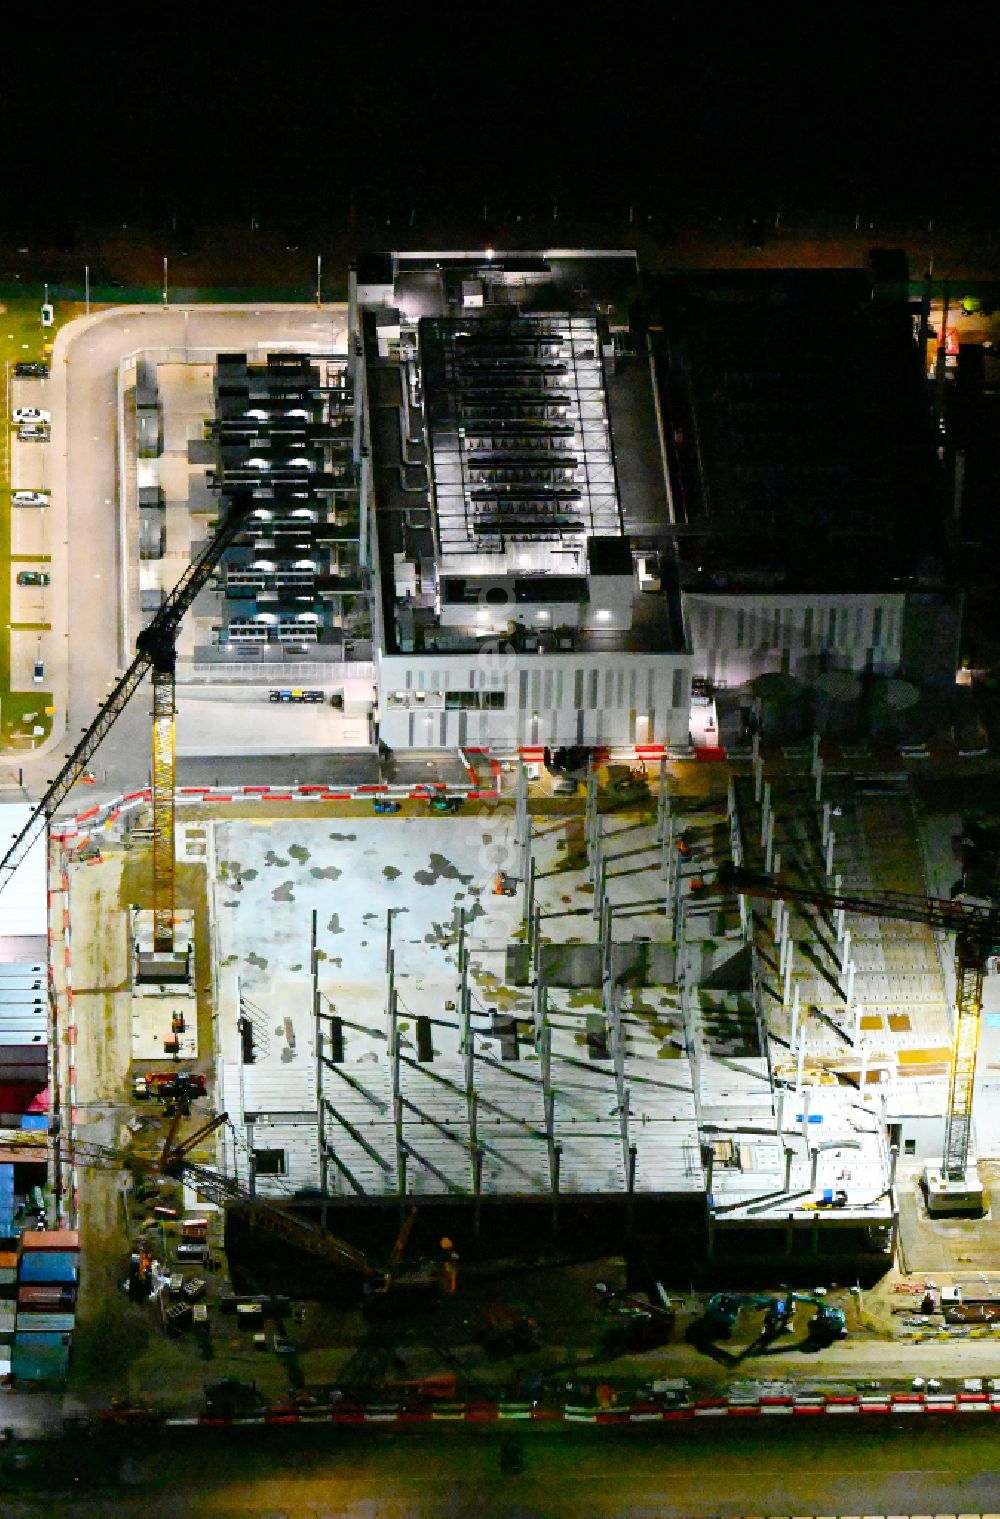 Mittenwalde bei Nacht von oben - Nachtluftbild Neubau des Rechenzentrums in Mittenwalde im Bundesland Brandenburg, Deutschland